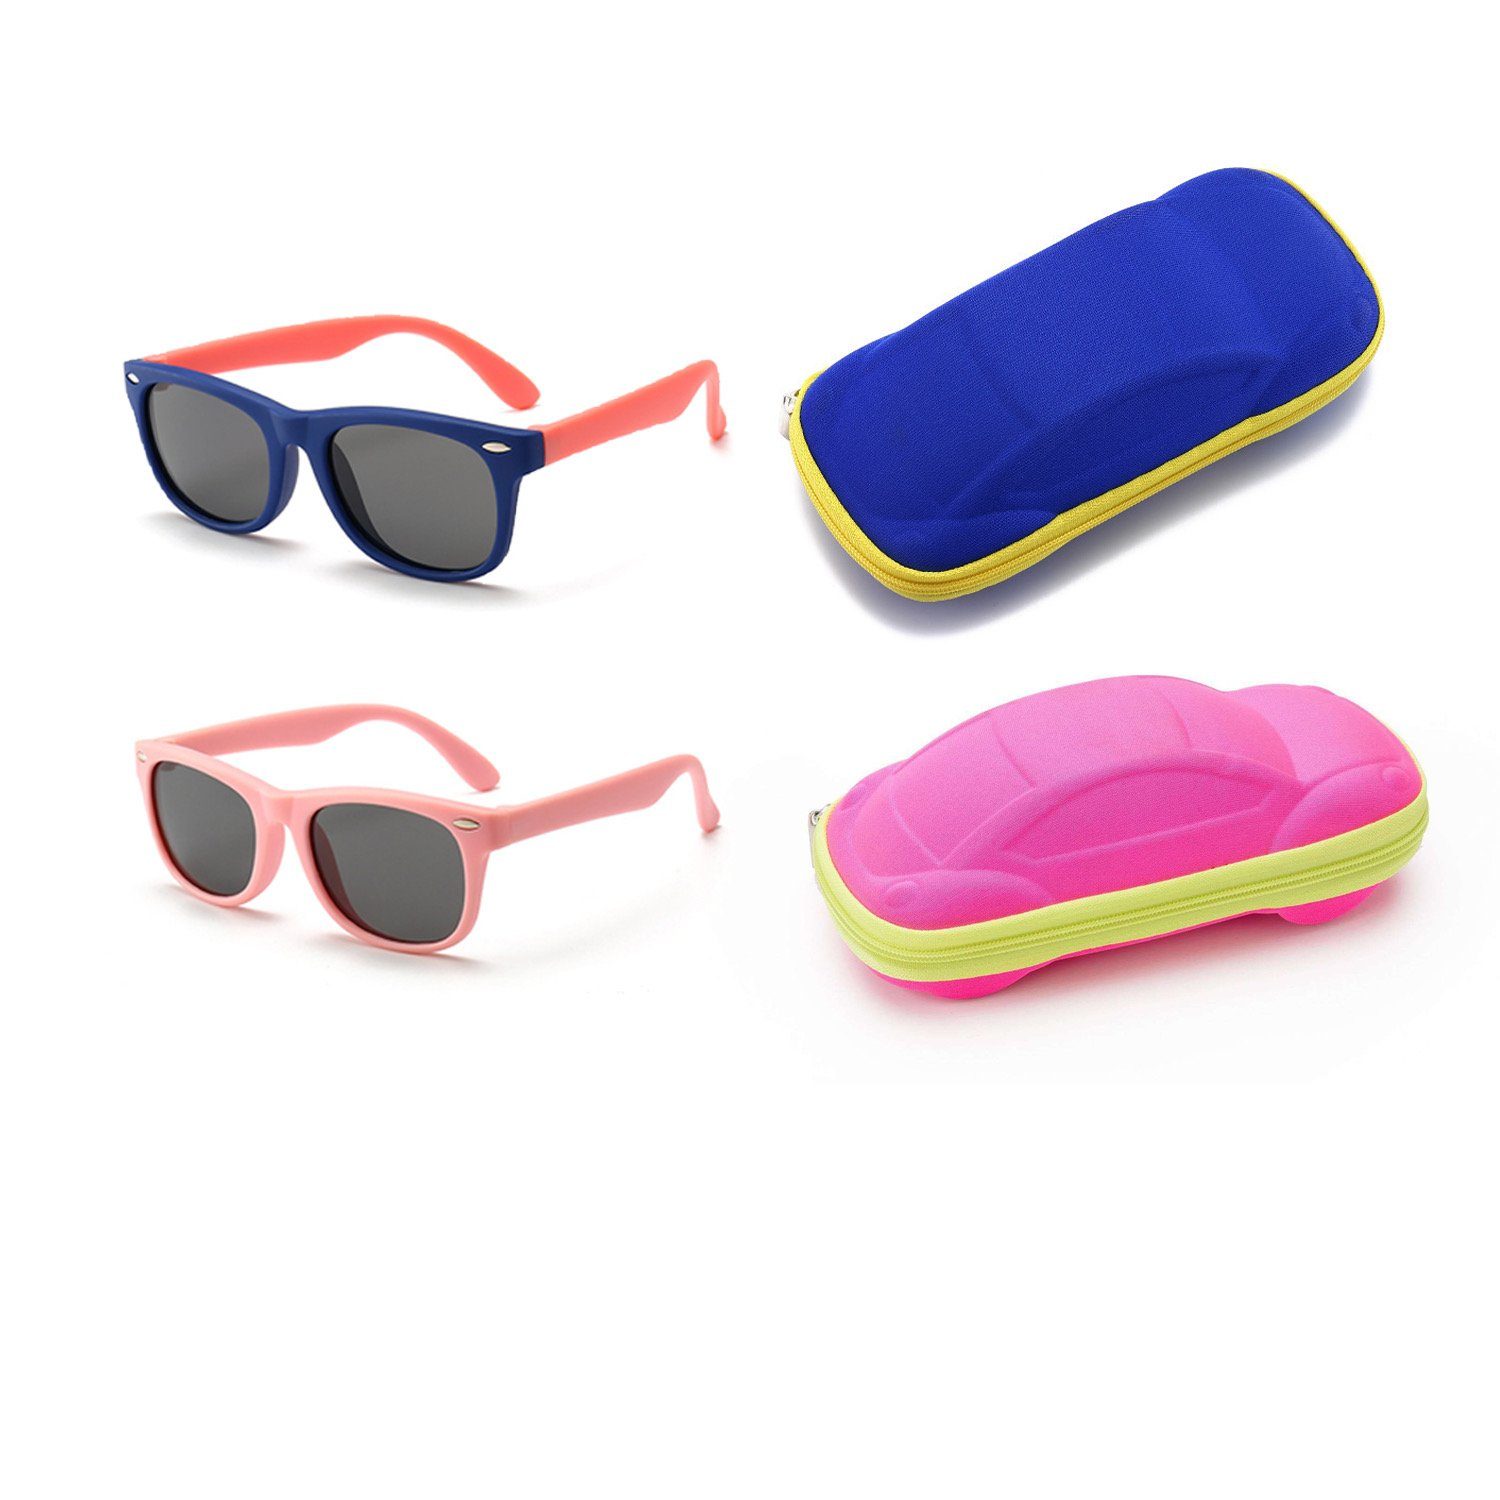 Olotos Sonnenbrille Sonnenbrille für Kinder Mädchen Jungen Gummi 100% UV400 Schutz Brille Dunkelblau+Rosa mit Brillenetui